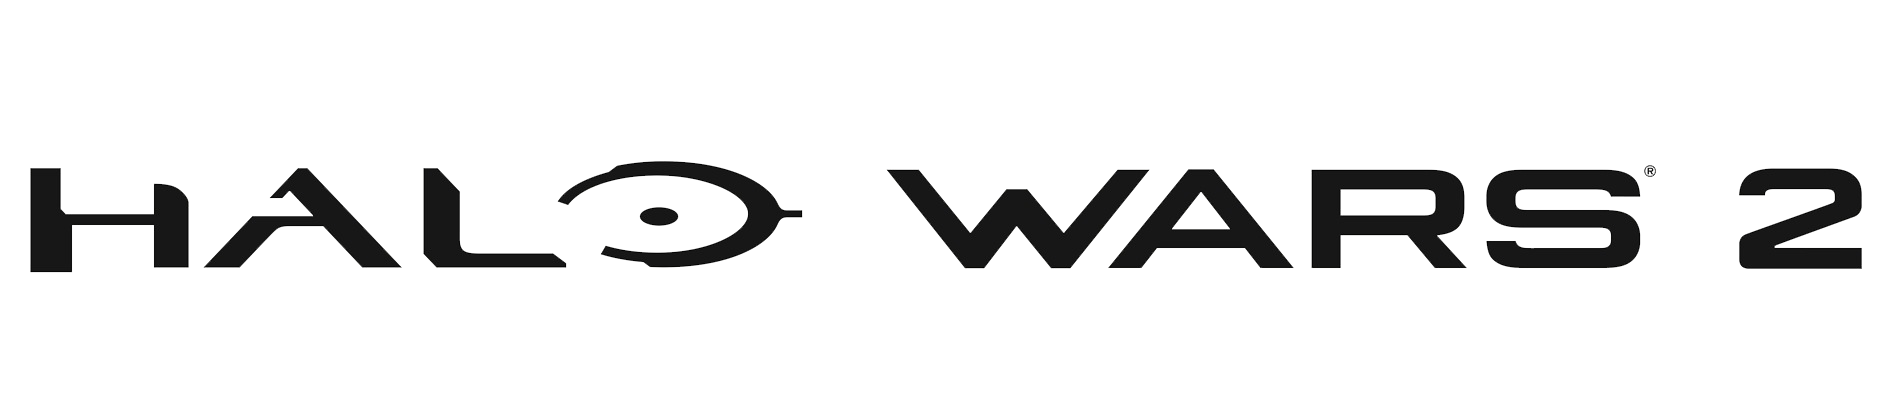 Download PNG image - Halo Wars Logo PNG Transparent Image 